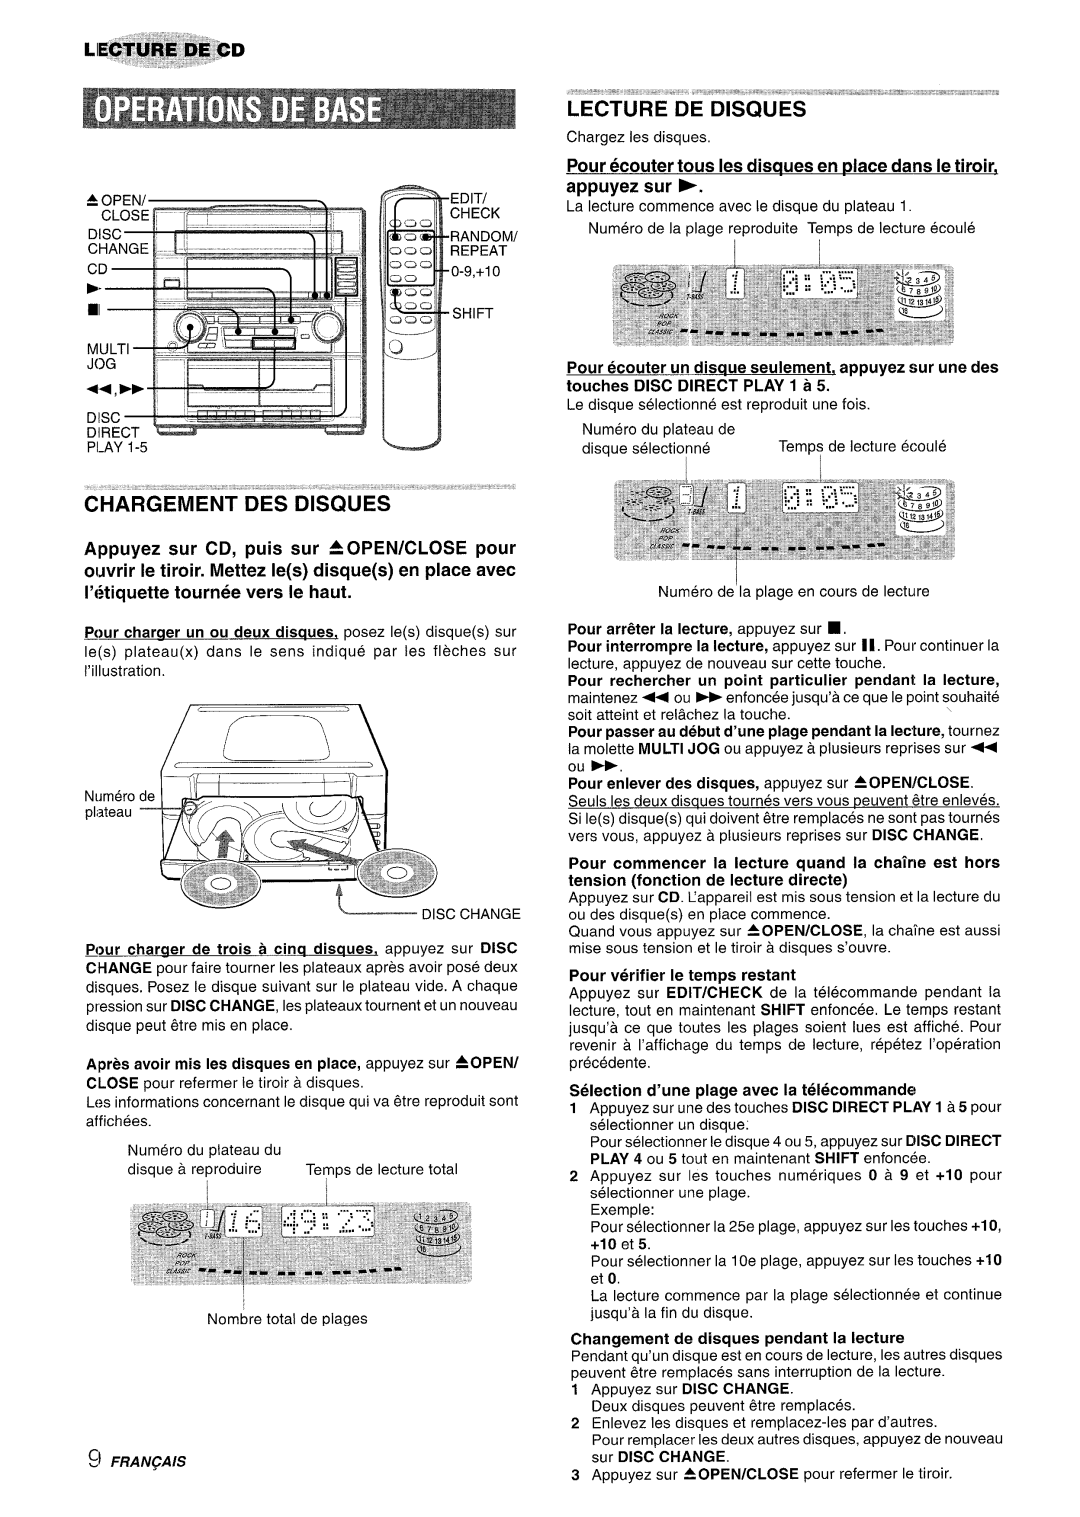 Aiwa Z-R555 manual i2H’ARbEM’E’iT DES DIsciuEs, Lecture De Disques 